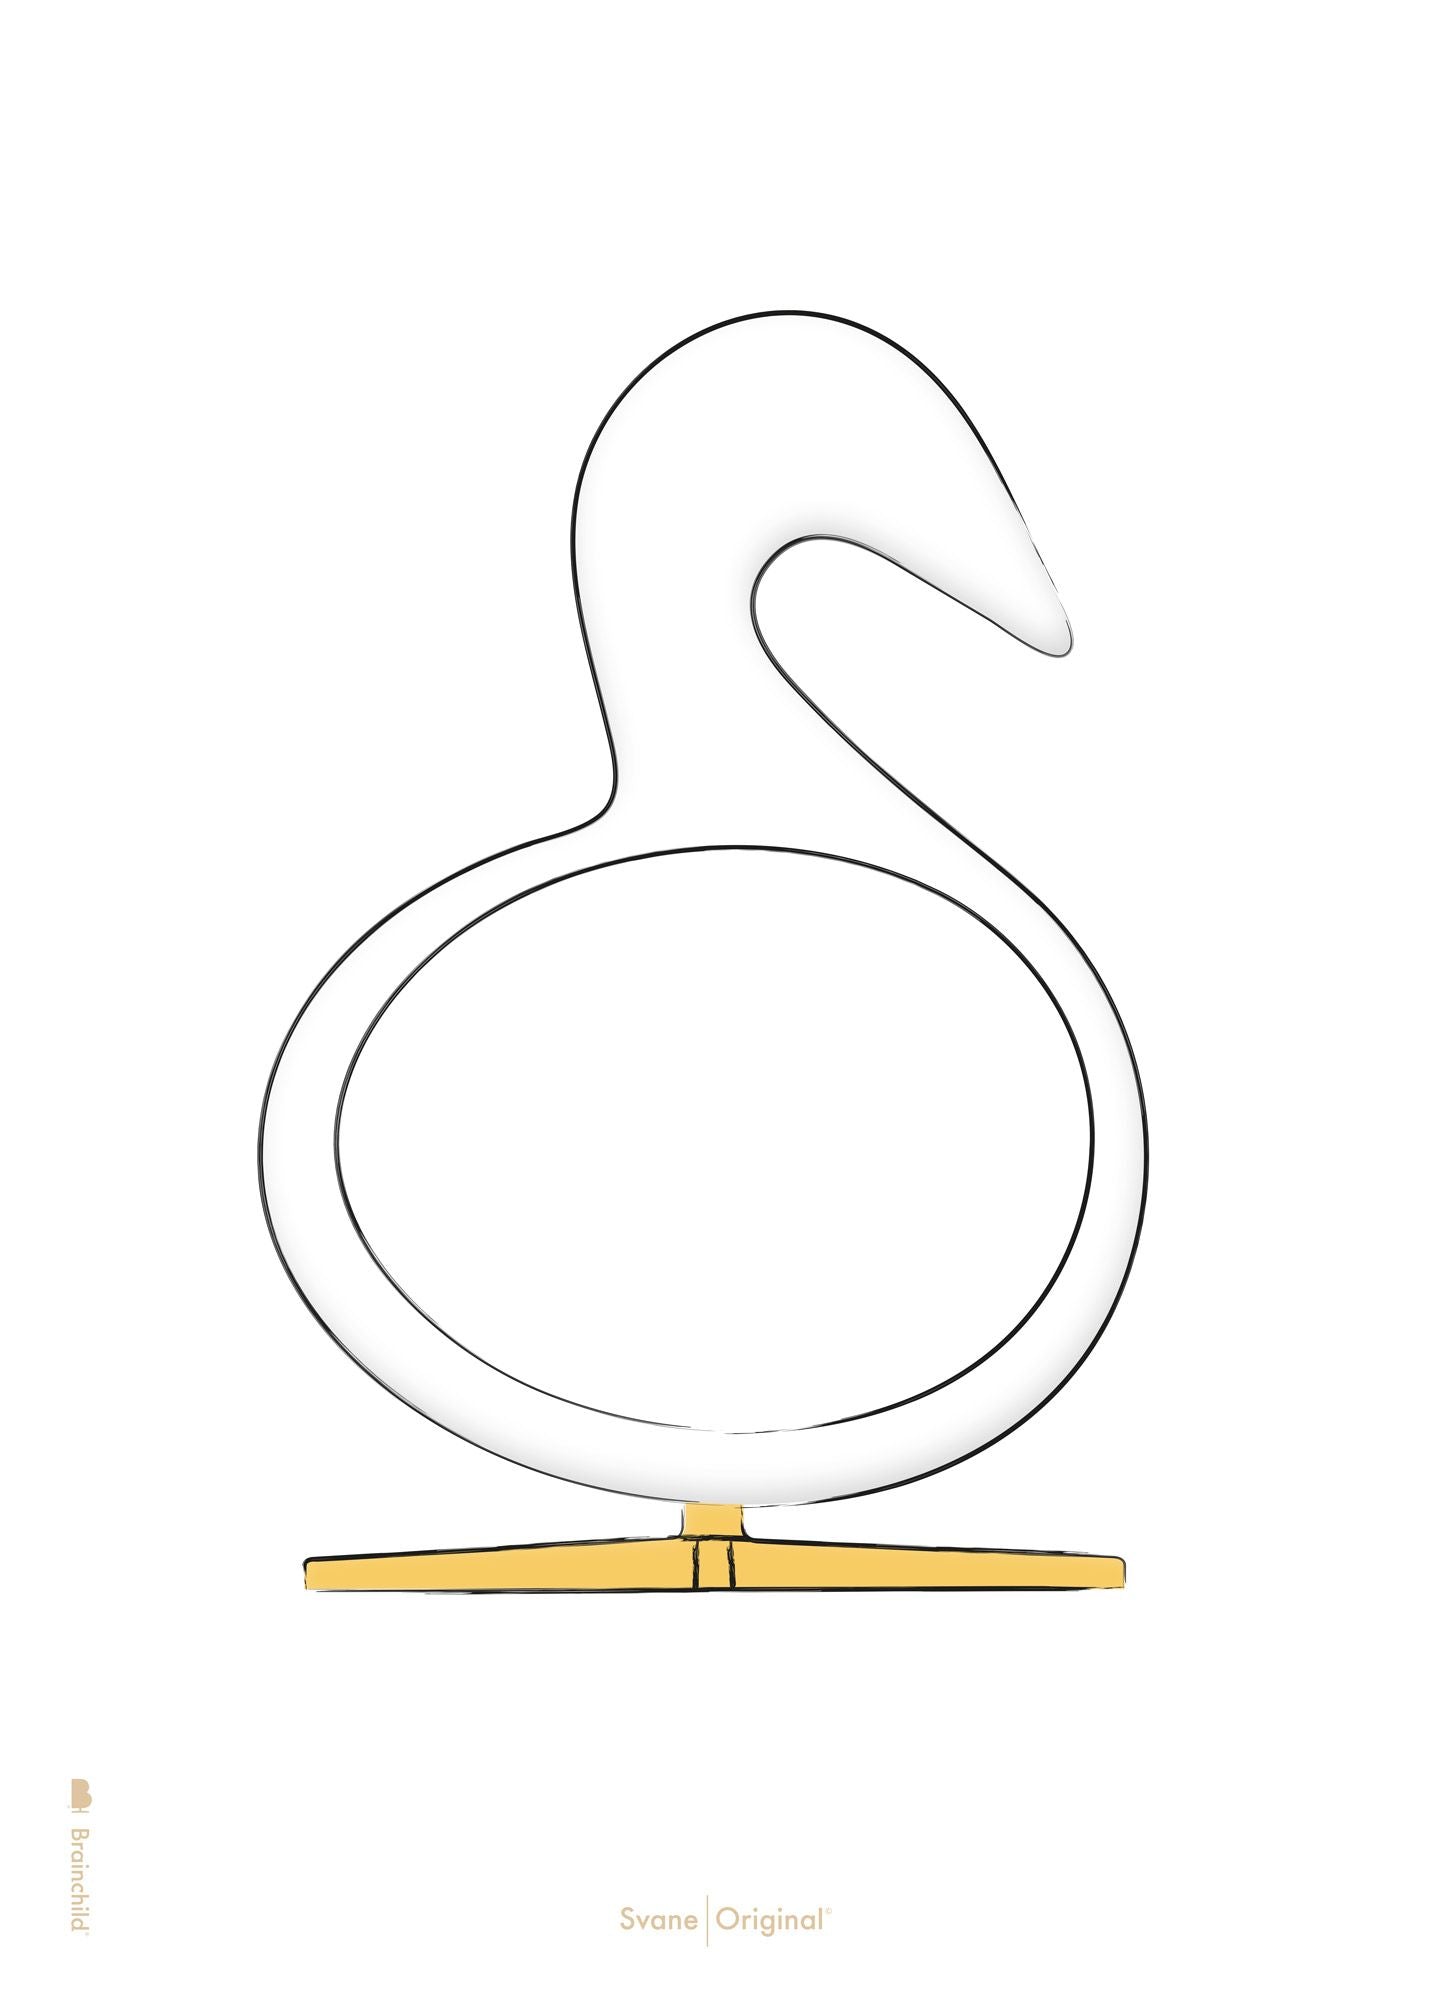 Brainchild Swan Design Sketch Poster ohne Rahmen A5, weißer Hintergrund